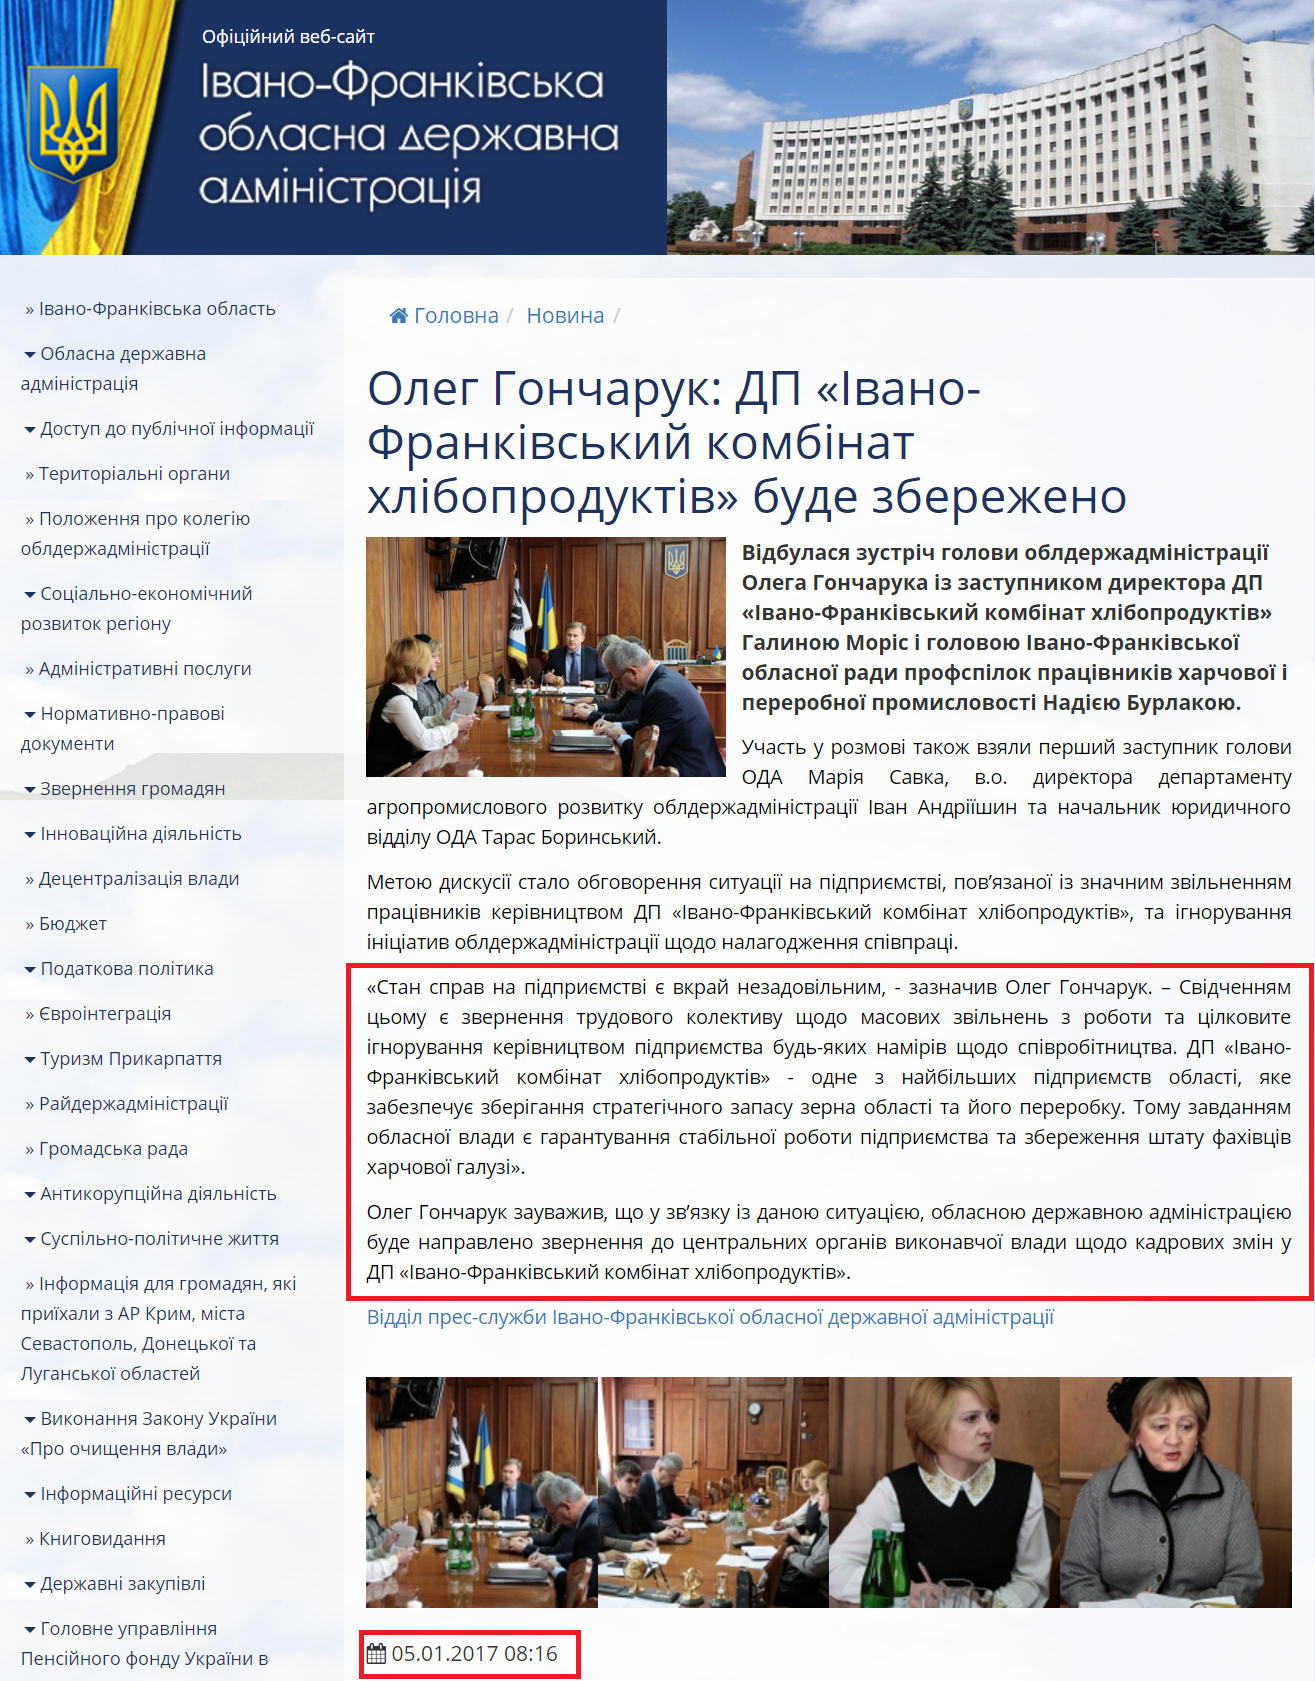 http://www.if.gov.ua/news/oleg-goncharuk-dp-ivano-frankivskij-kombinat-hliboproduktiv-bude-zberezheno